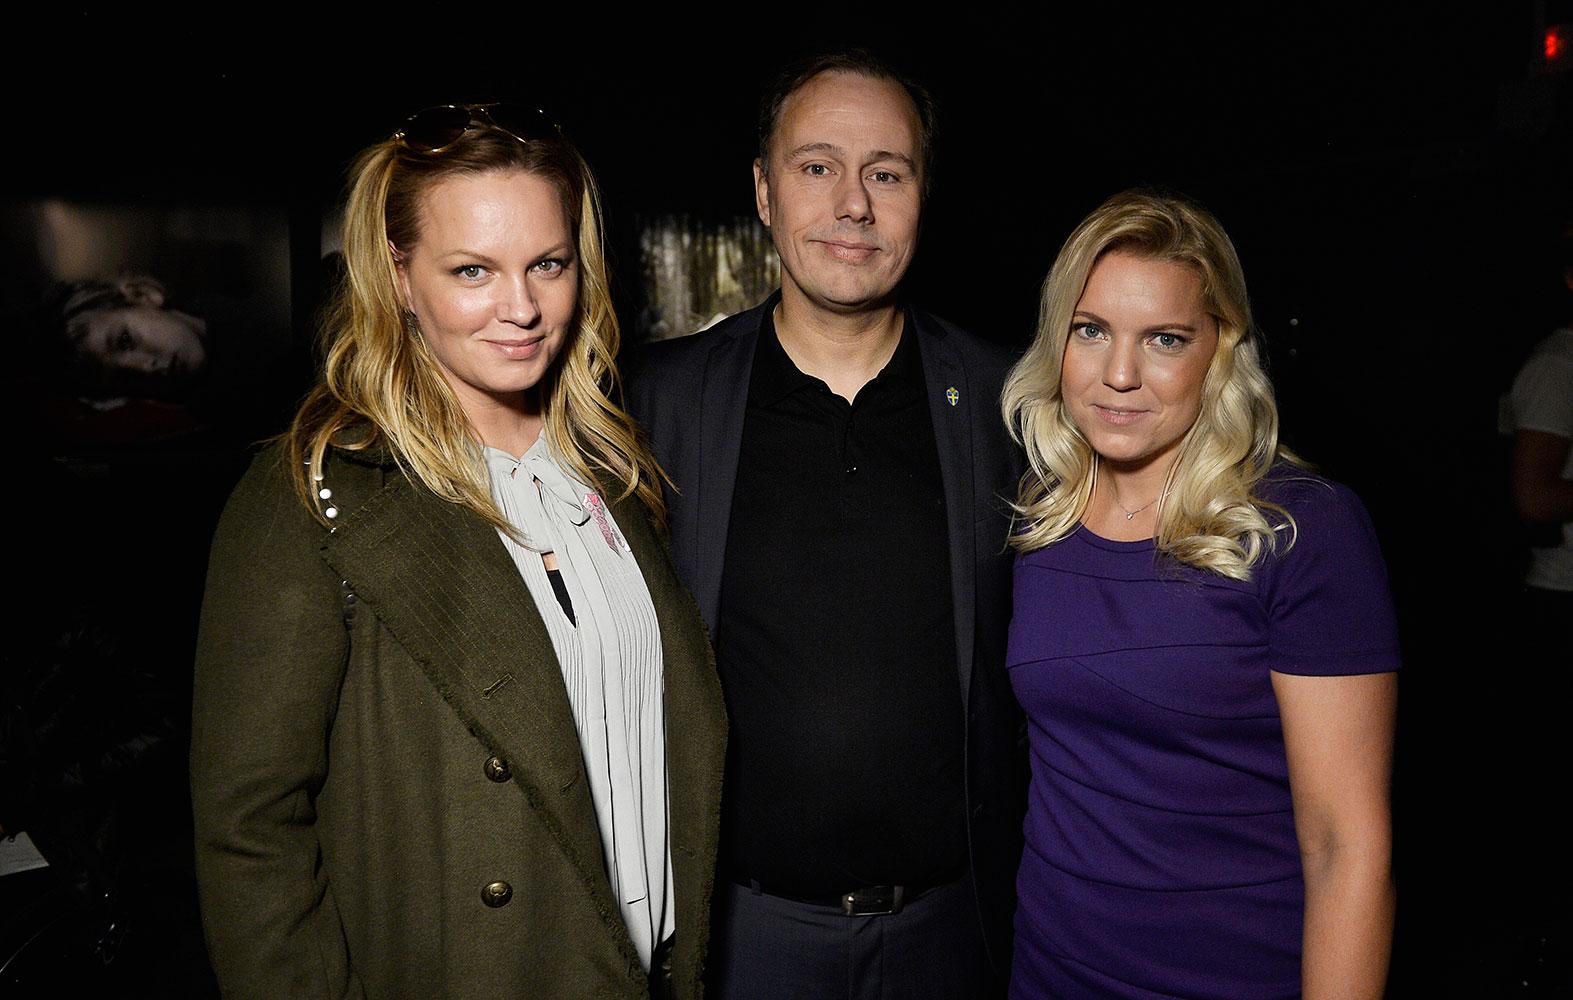 Makeupartisten Carina Nilsson, Niklas Bodell, Svenska fotbollförbundets kommunikationschef, och Aftonbladets journalist Carina Bergfeldt.